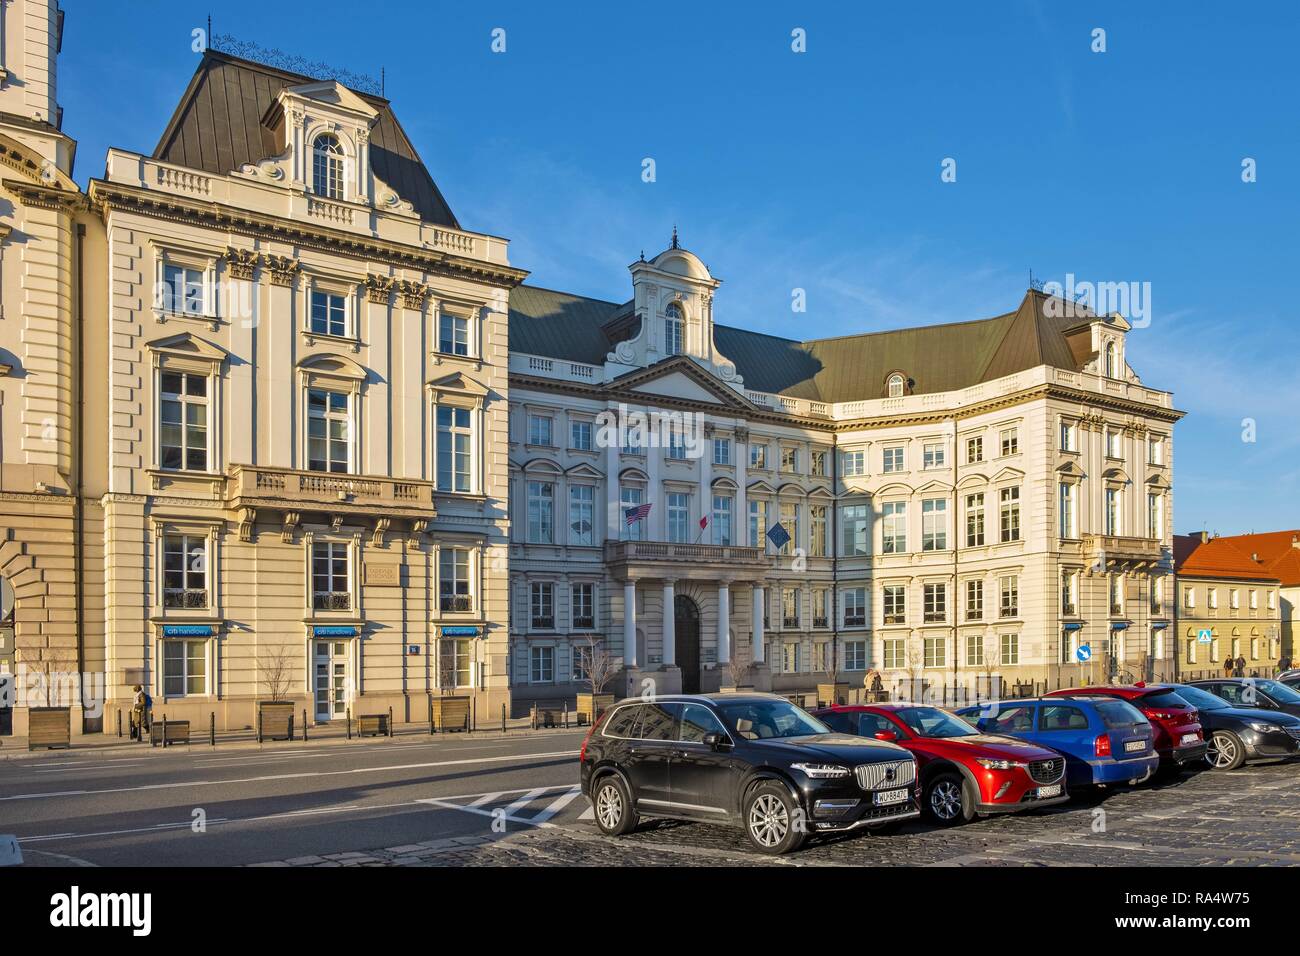 Varsovie, Mazovie / Pologne - 2018/11/18 : Jablonowski Palace à la place du théâtre et rue Senatorska dans le quartier historique de la vieille ville de Varsovie Banque D'Images